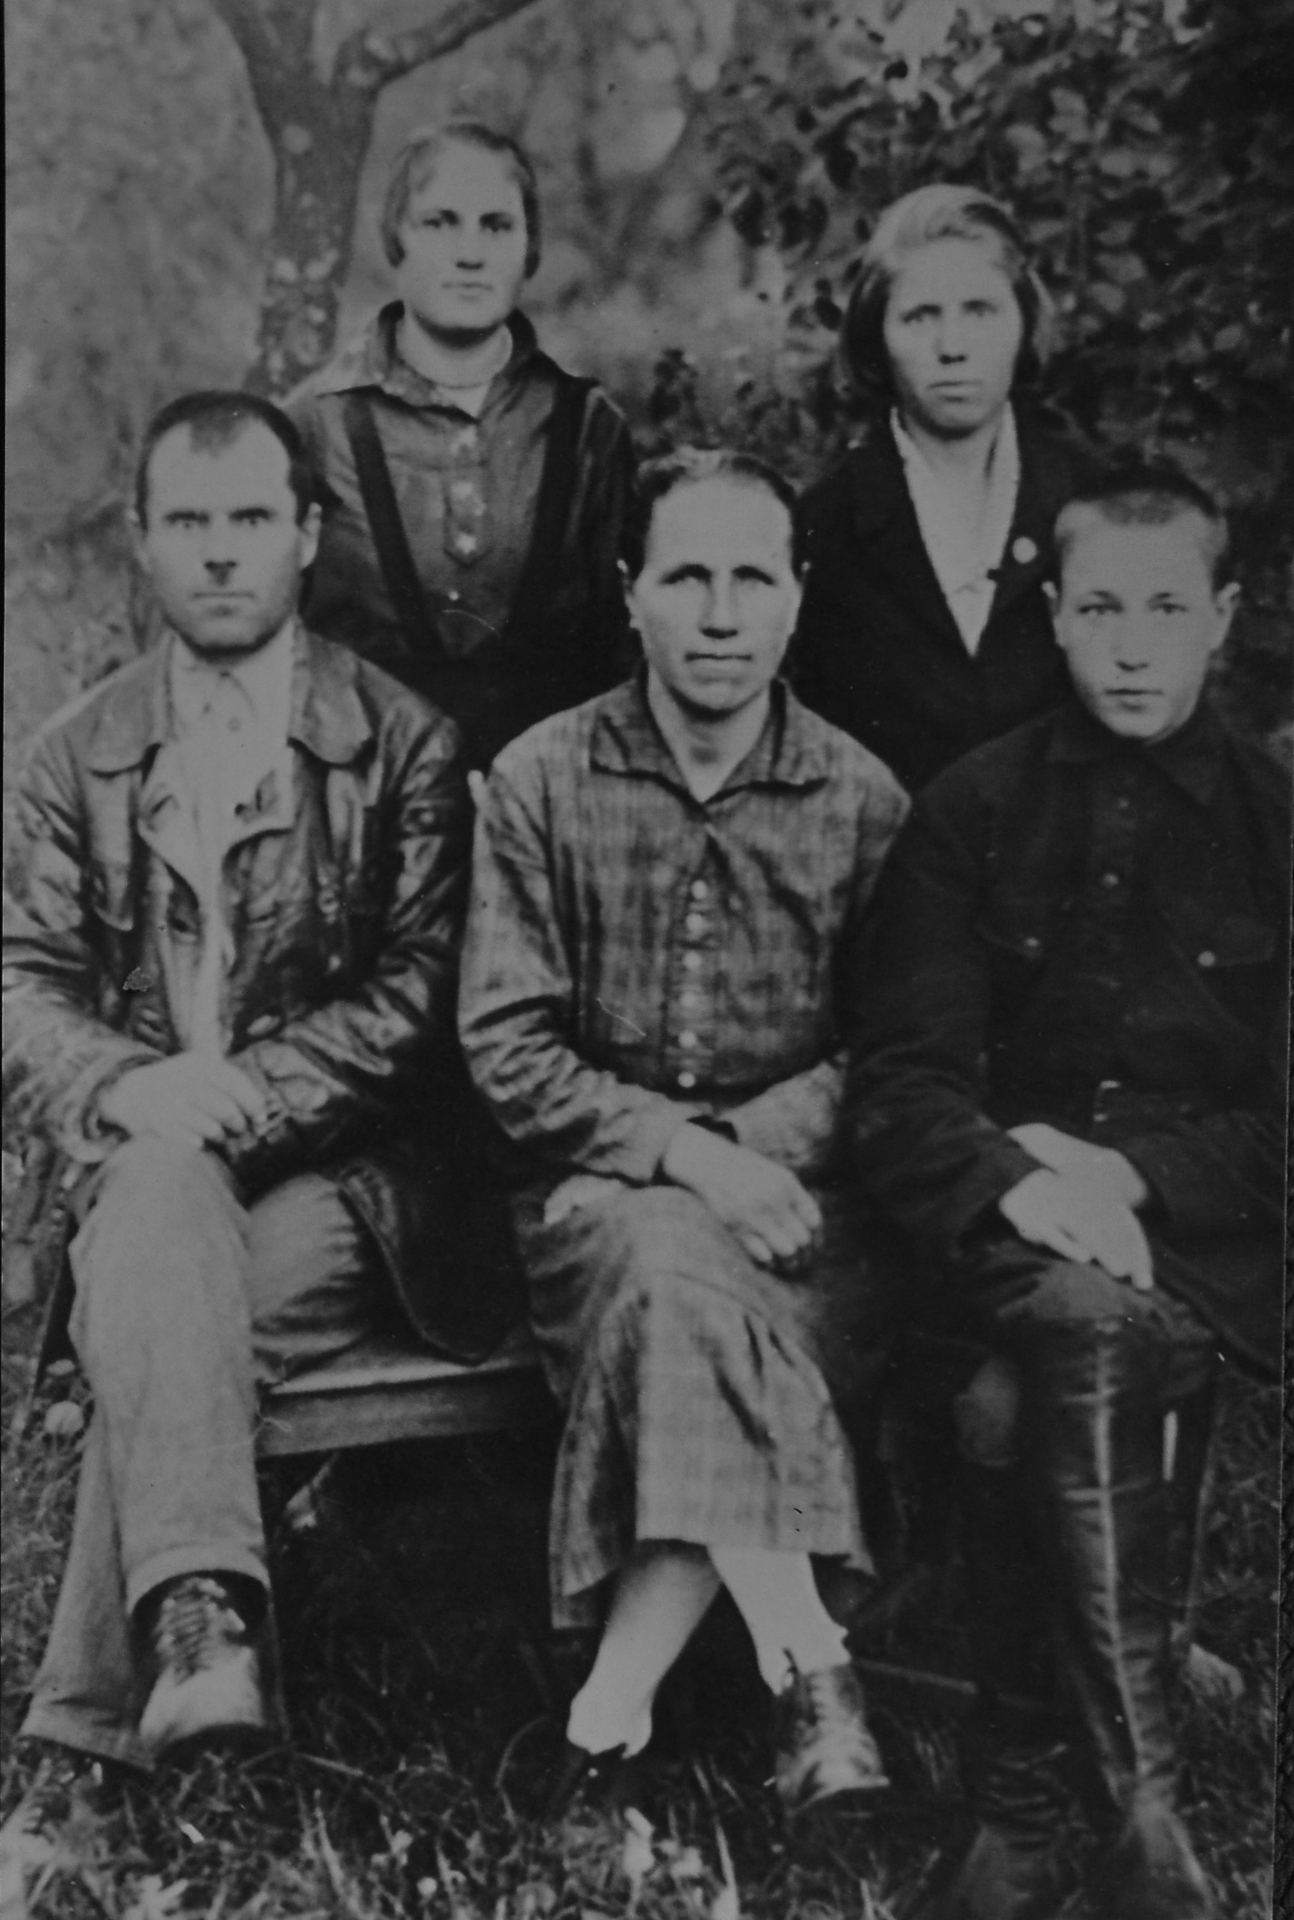 1-Родина безсальчан Ємців - батько й чоловік Сидір Калістратович, 1893 р.н., (розстріляний 03.06.1938), дружина і мати Ганна, їхні діти - син Яків, доньки - Маруся і Паша (довоєнна світлина)